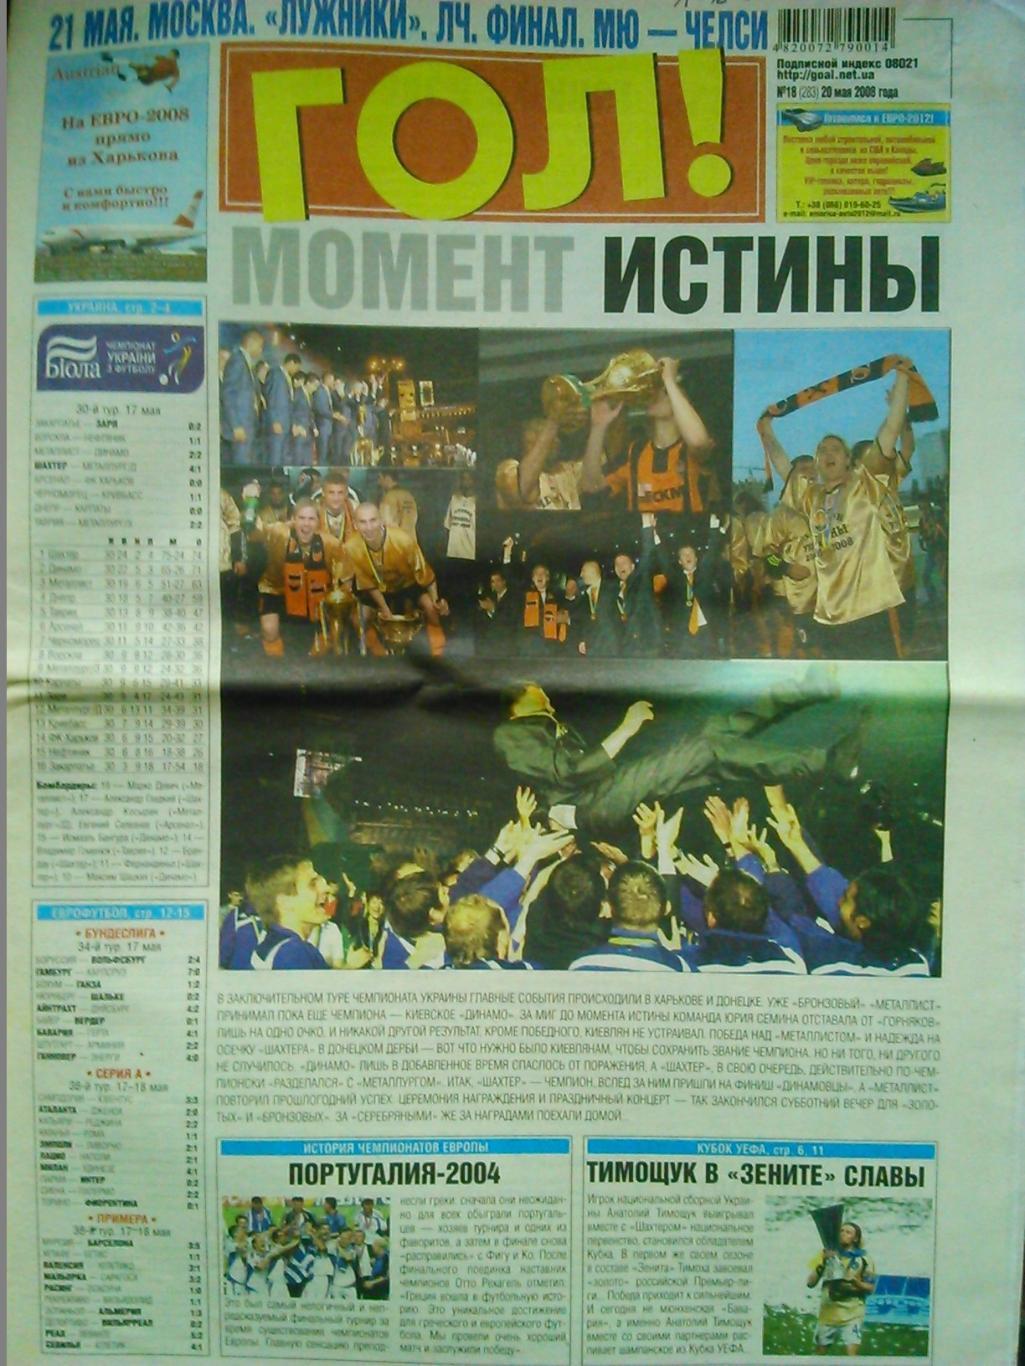 ГОЛ! №18(283) 2008. МЕТАЛЛИСТ- БРОНЗА! Укр. спорт газета. Оптом скидки до 45%!